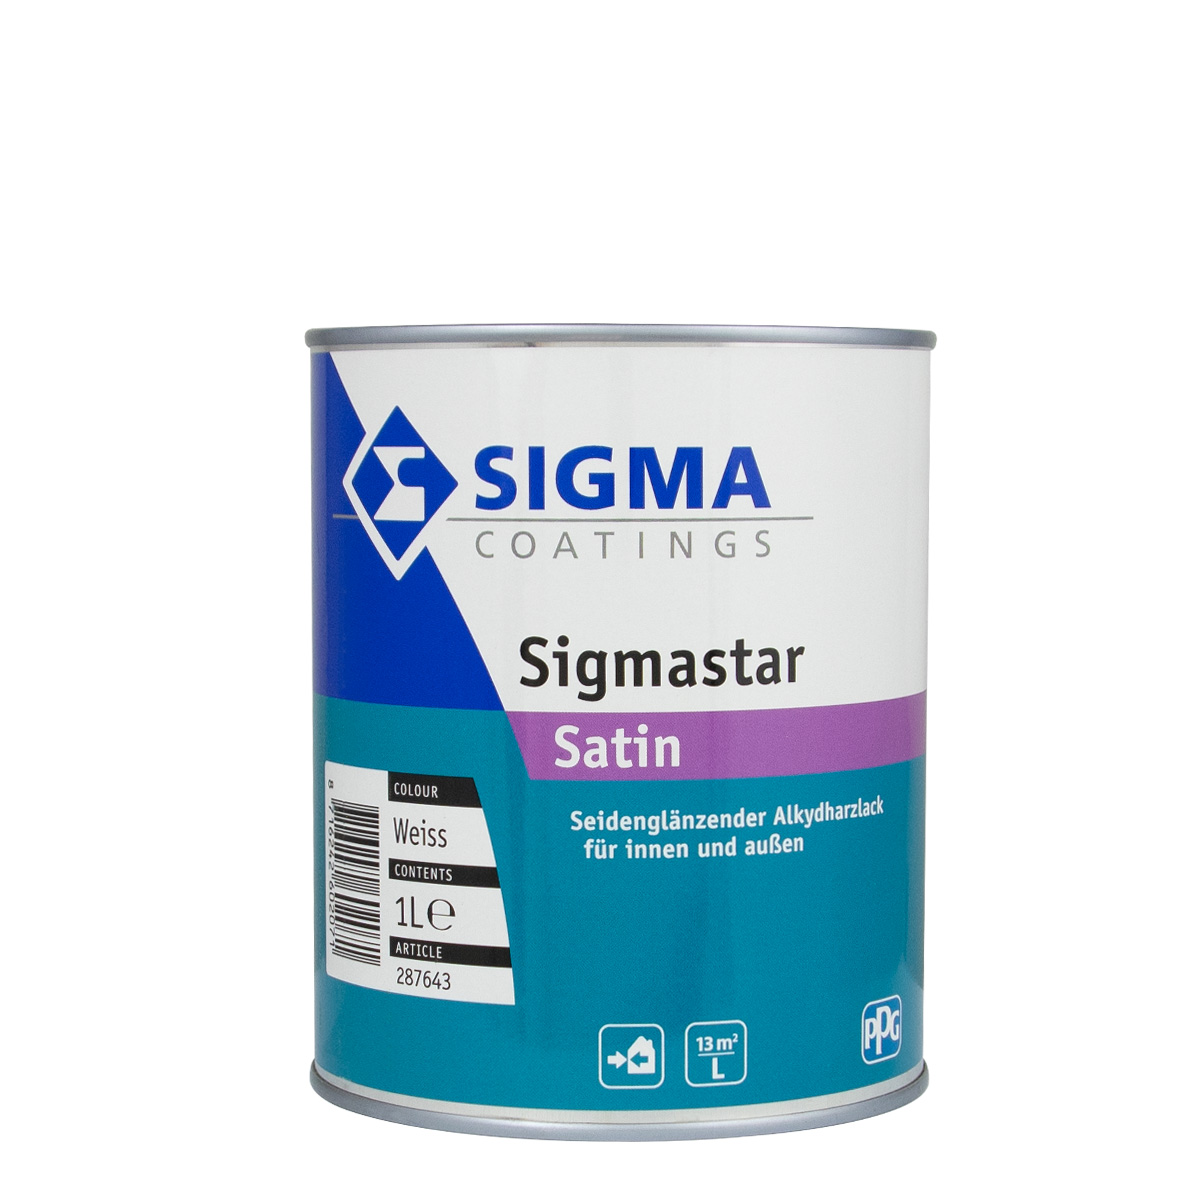 Sigma Sigmastar Satin weiss 1L, seidenglänzender Alkydharzlack